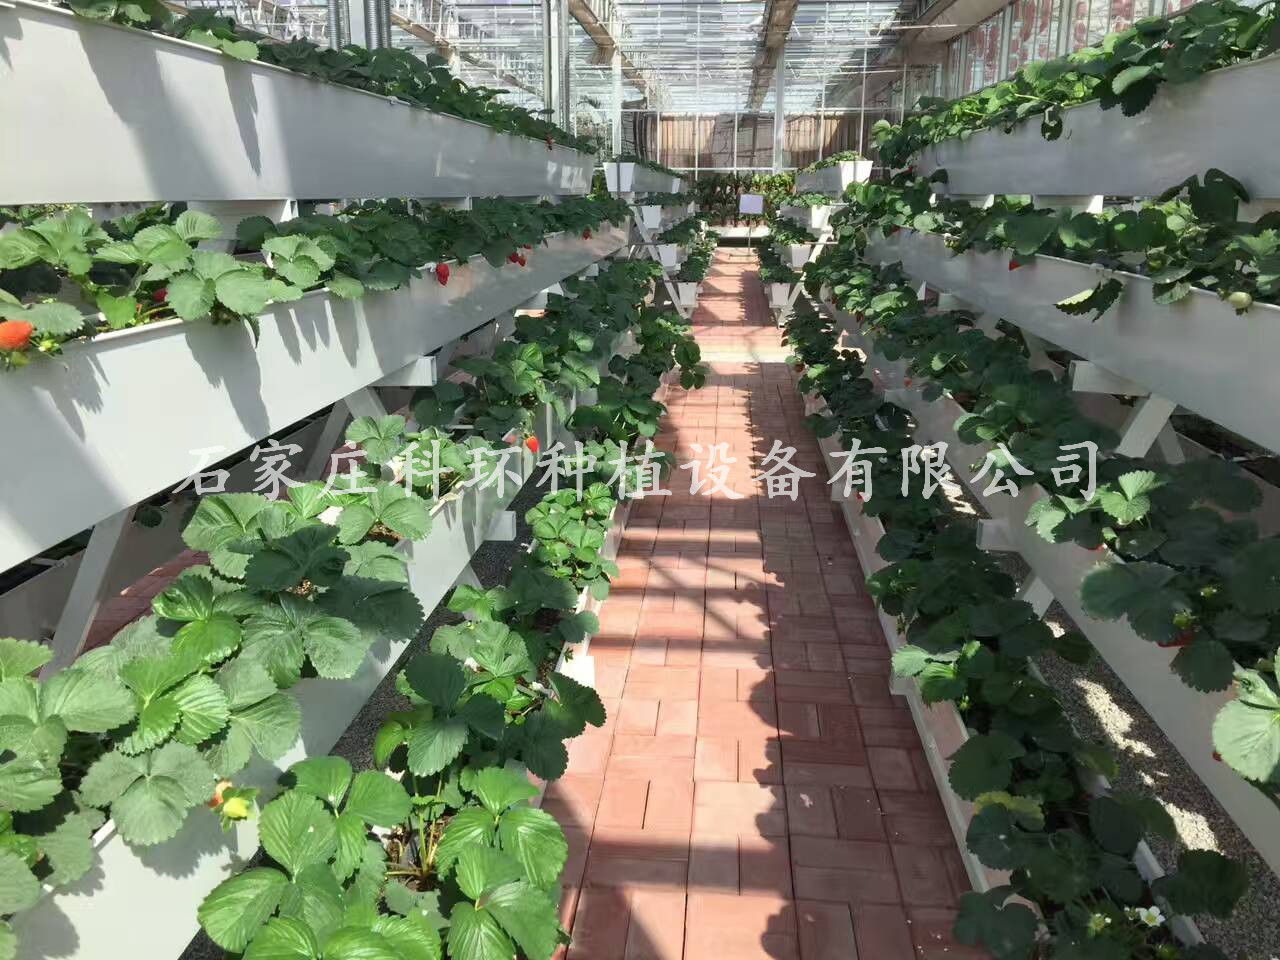 石家庄科环种植设备有限公司 四季草莓育苗基地 草莓种植槽图片